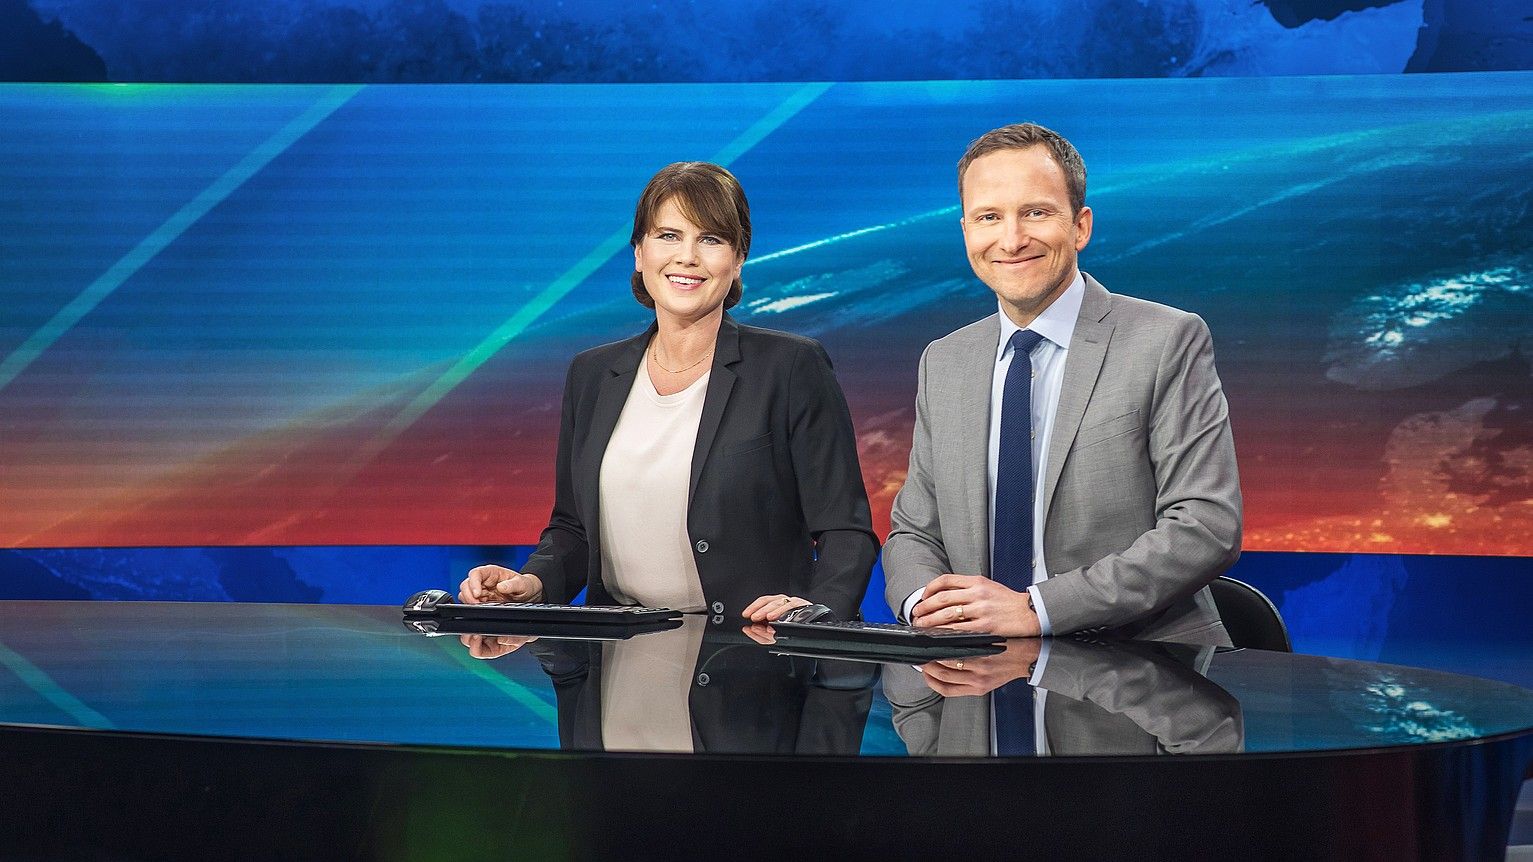 Suediako SVT telebistako Aktuellt informazio saioko aurkezleak. ANDERS MOHLIN / SVT.